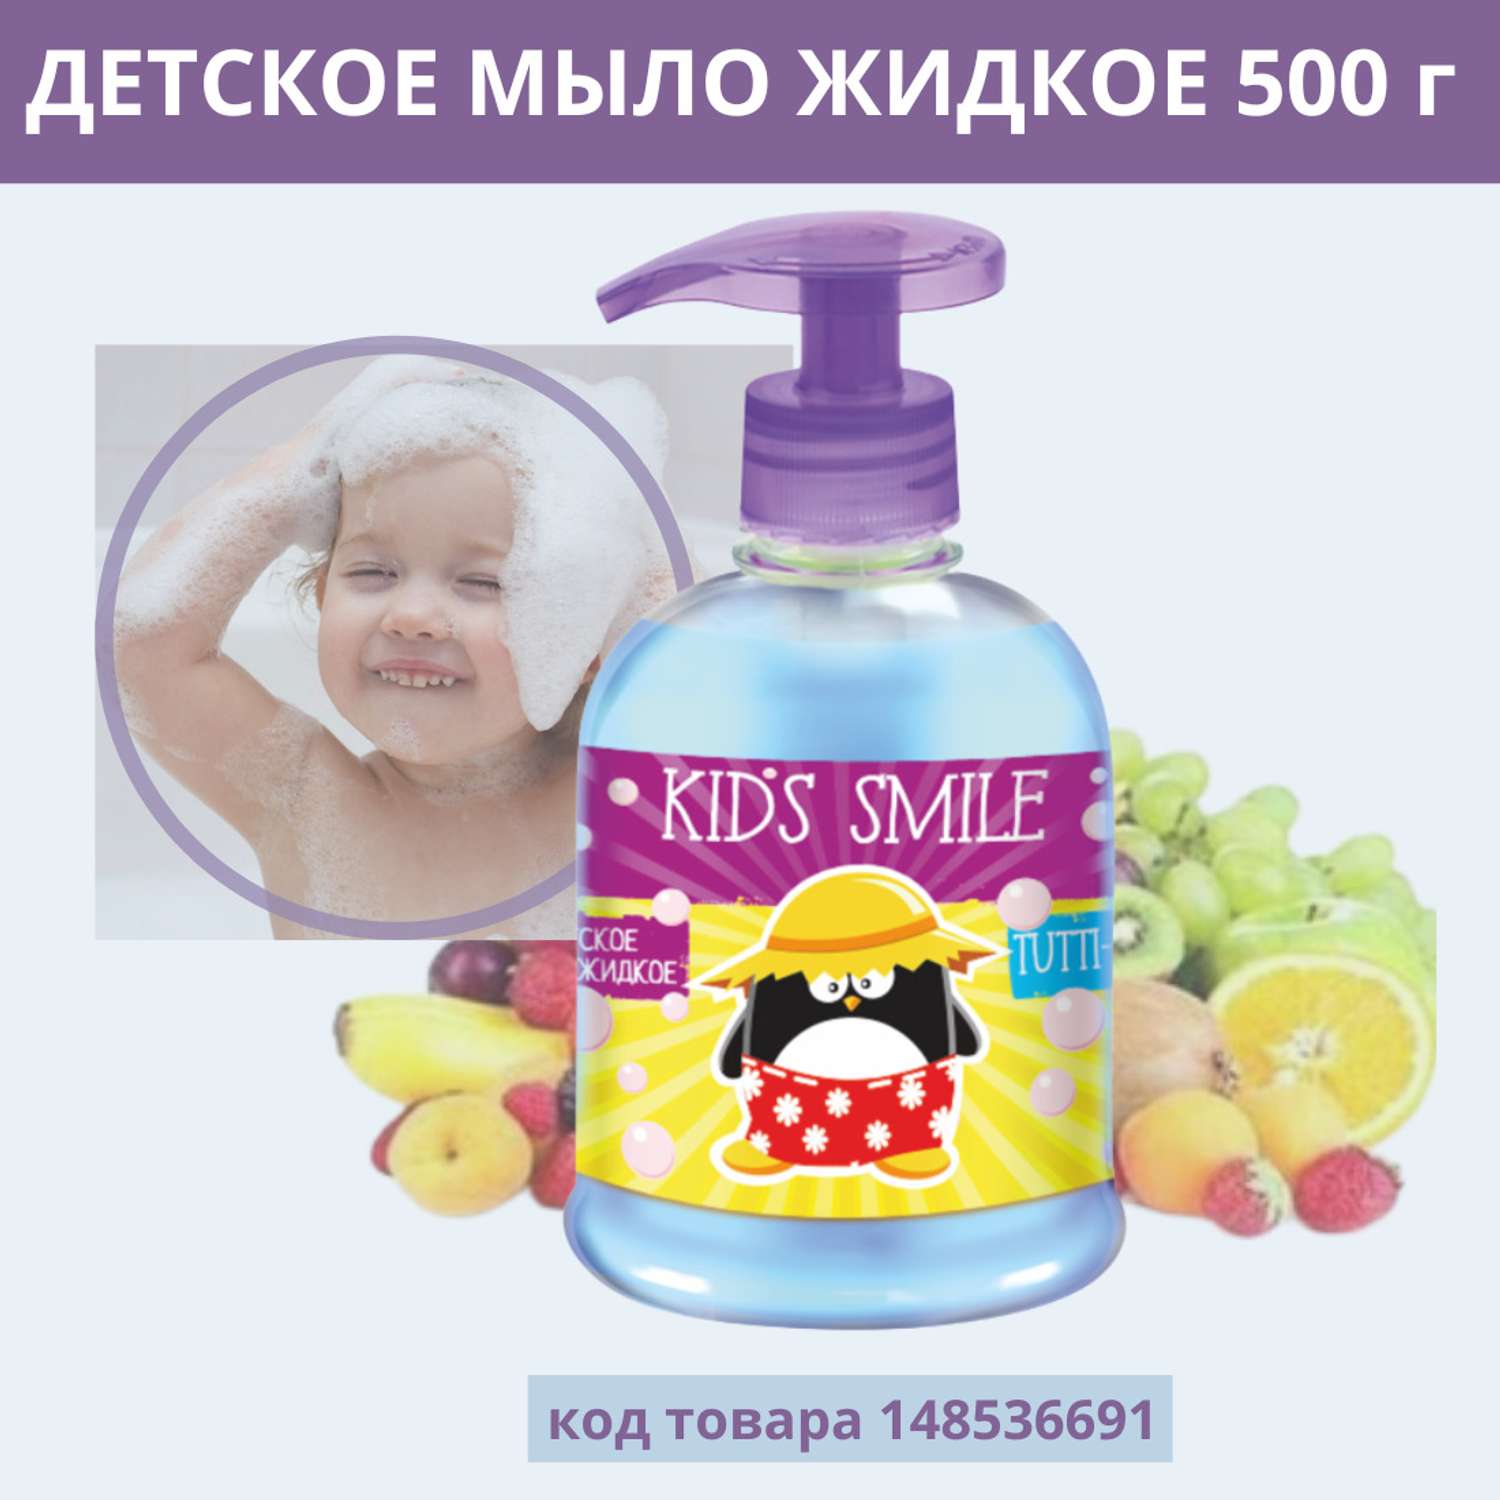 Жидкое мыло ROMAX детское Kids Smile Тутти Фрутти 500 г - фото 1